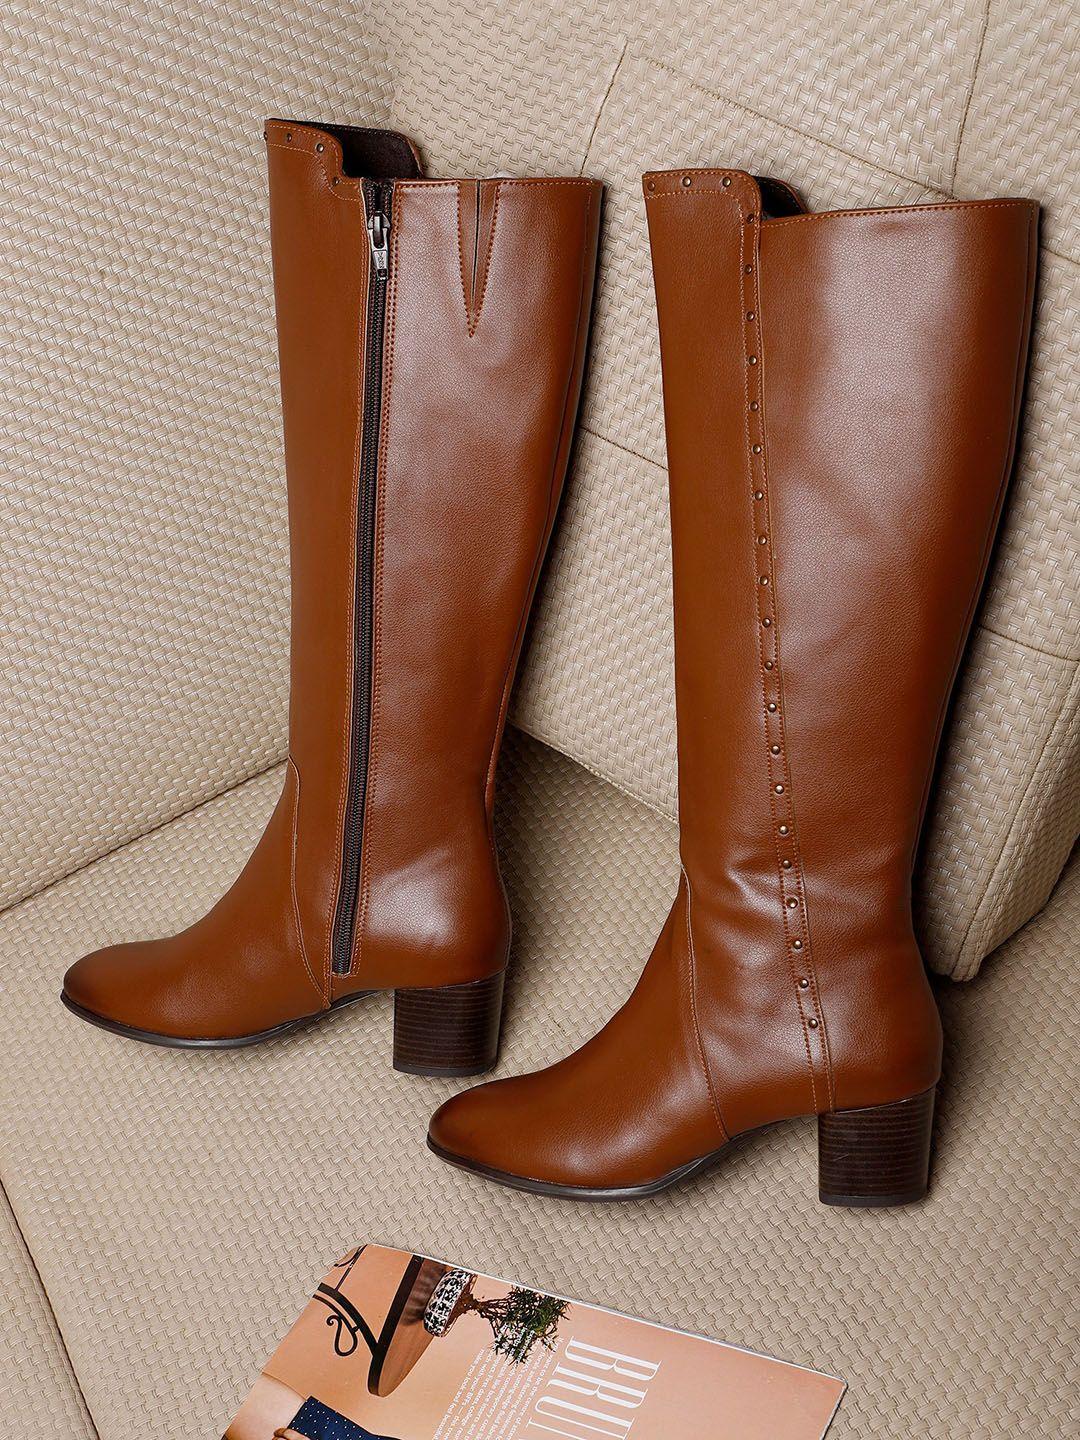 elle women embellished high -top regular boots